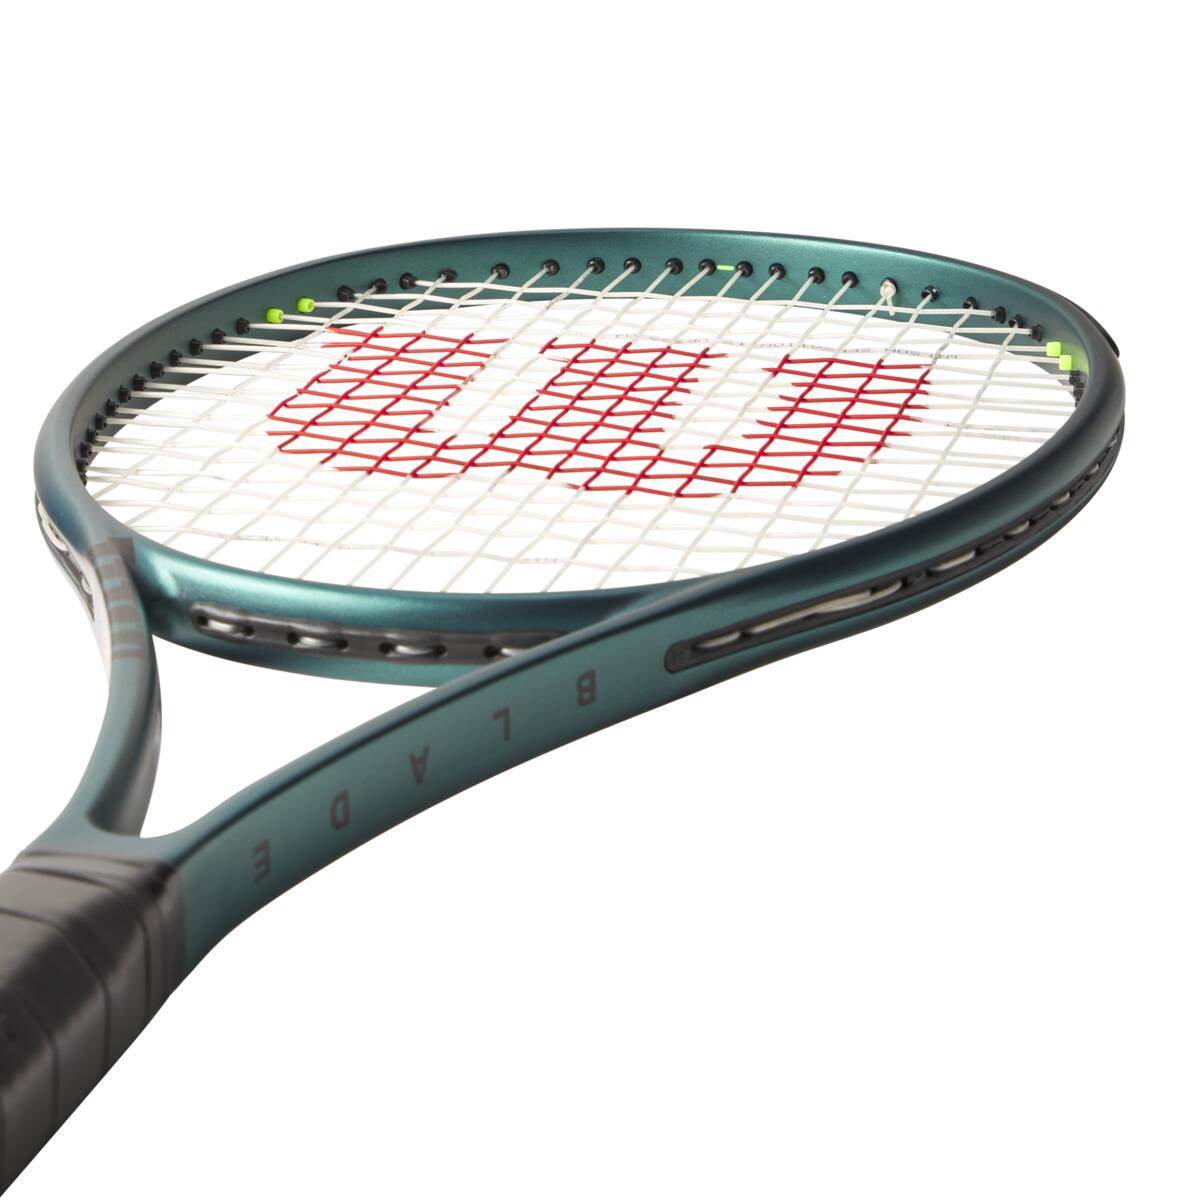 Raquete de Tennis Blade 98 (16x19) V9